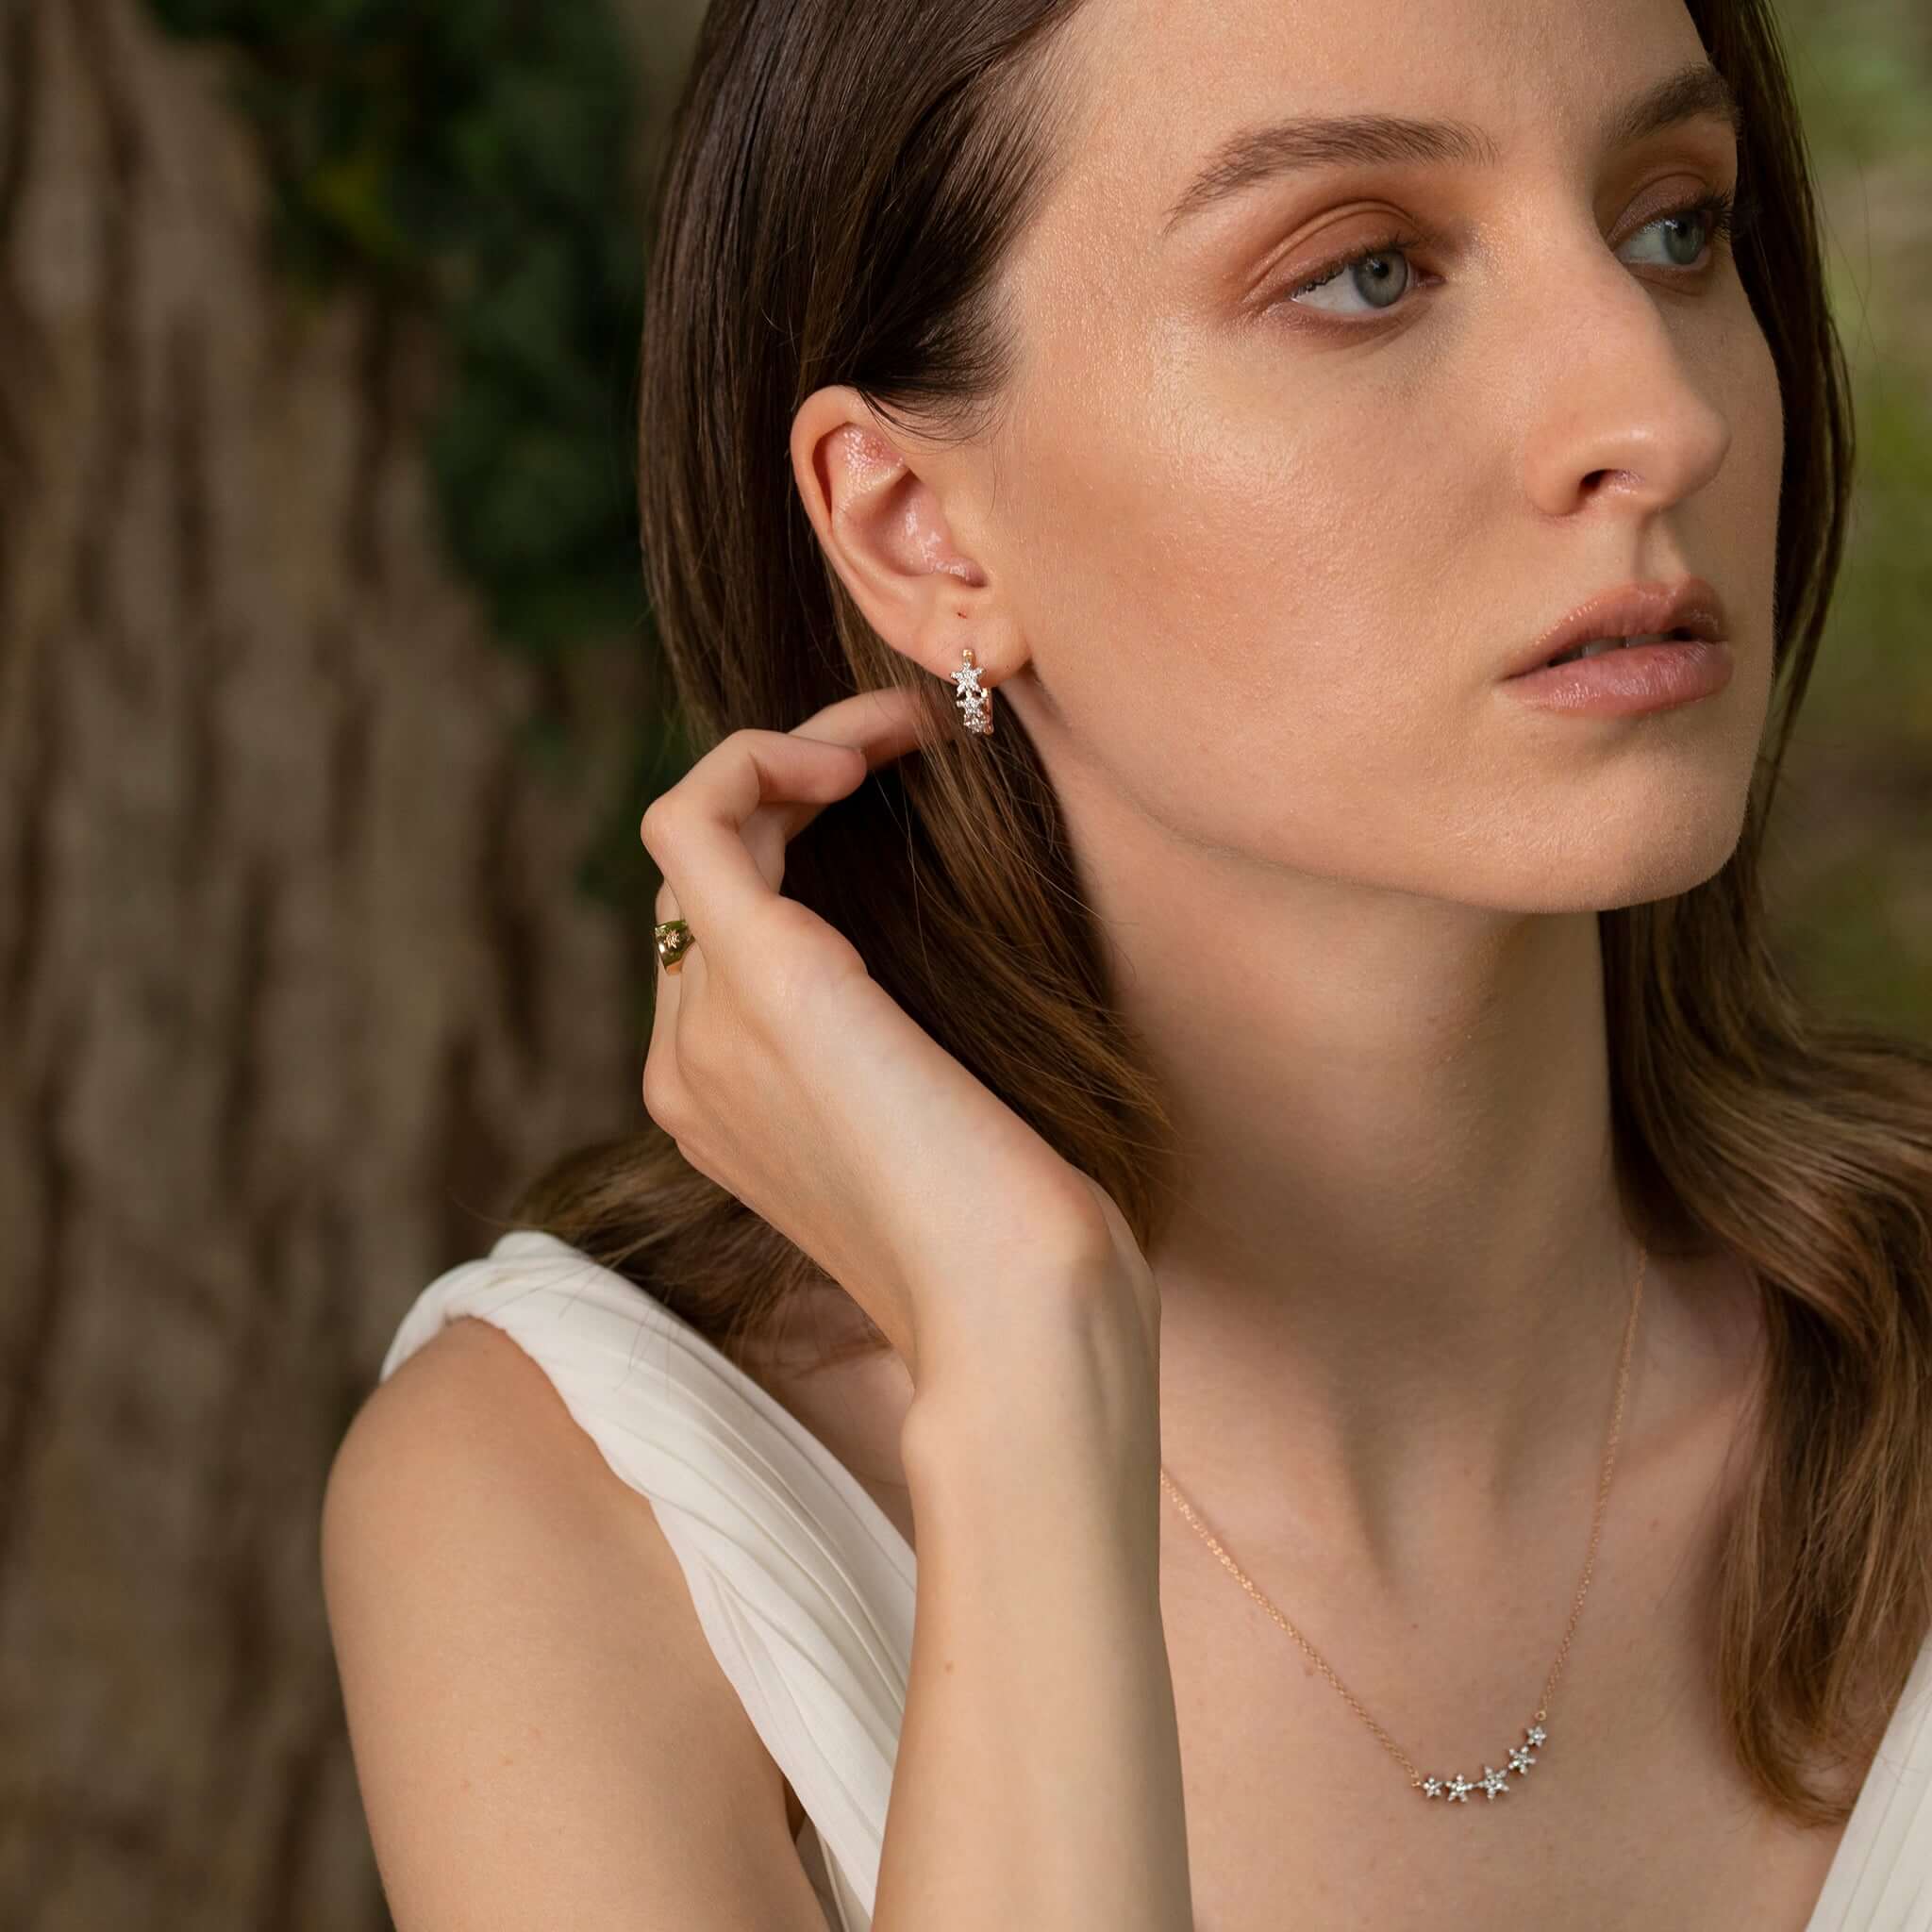 Jewelry Nova | Diamond Earrings | 0.28 Cts. | 14K Gold - Rose / Pair / Diamonds - earring Zengoda Shop online